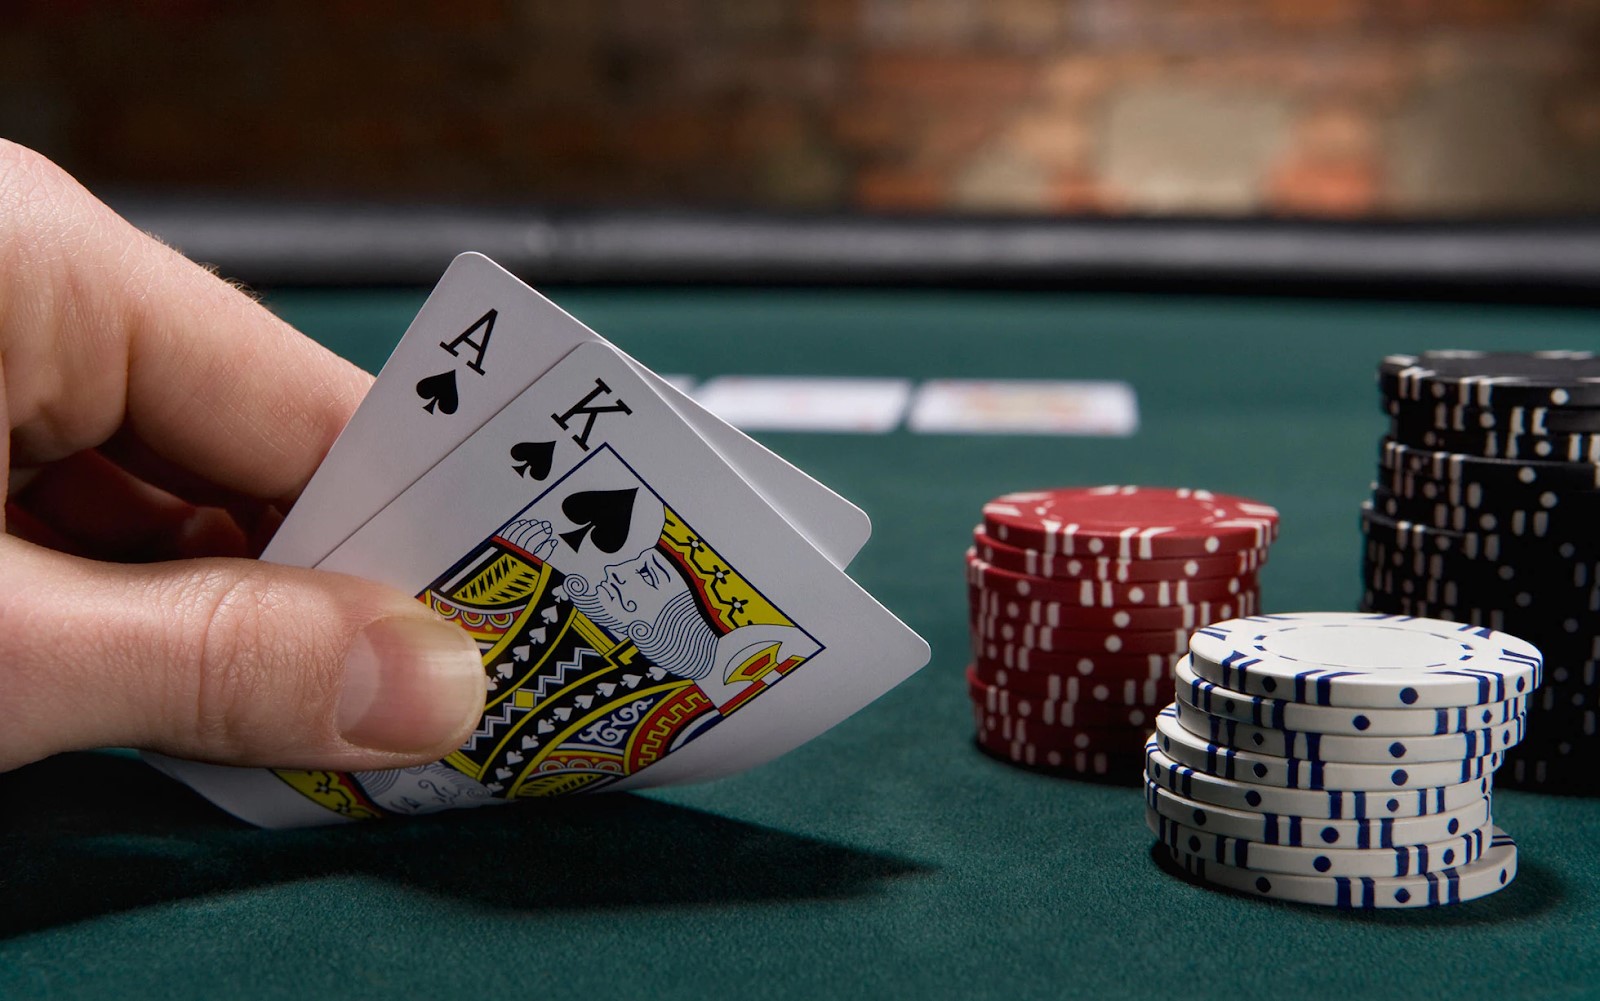 Tham gia game Poker cực kỳ đơn giản qua các thao tác nhanh